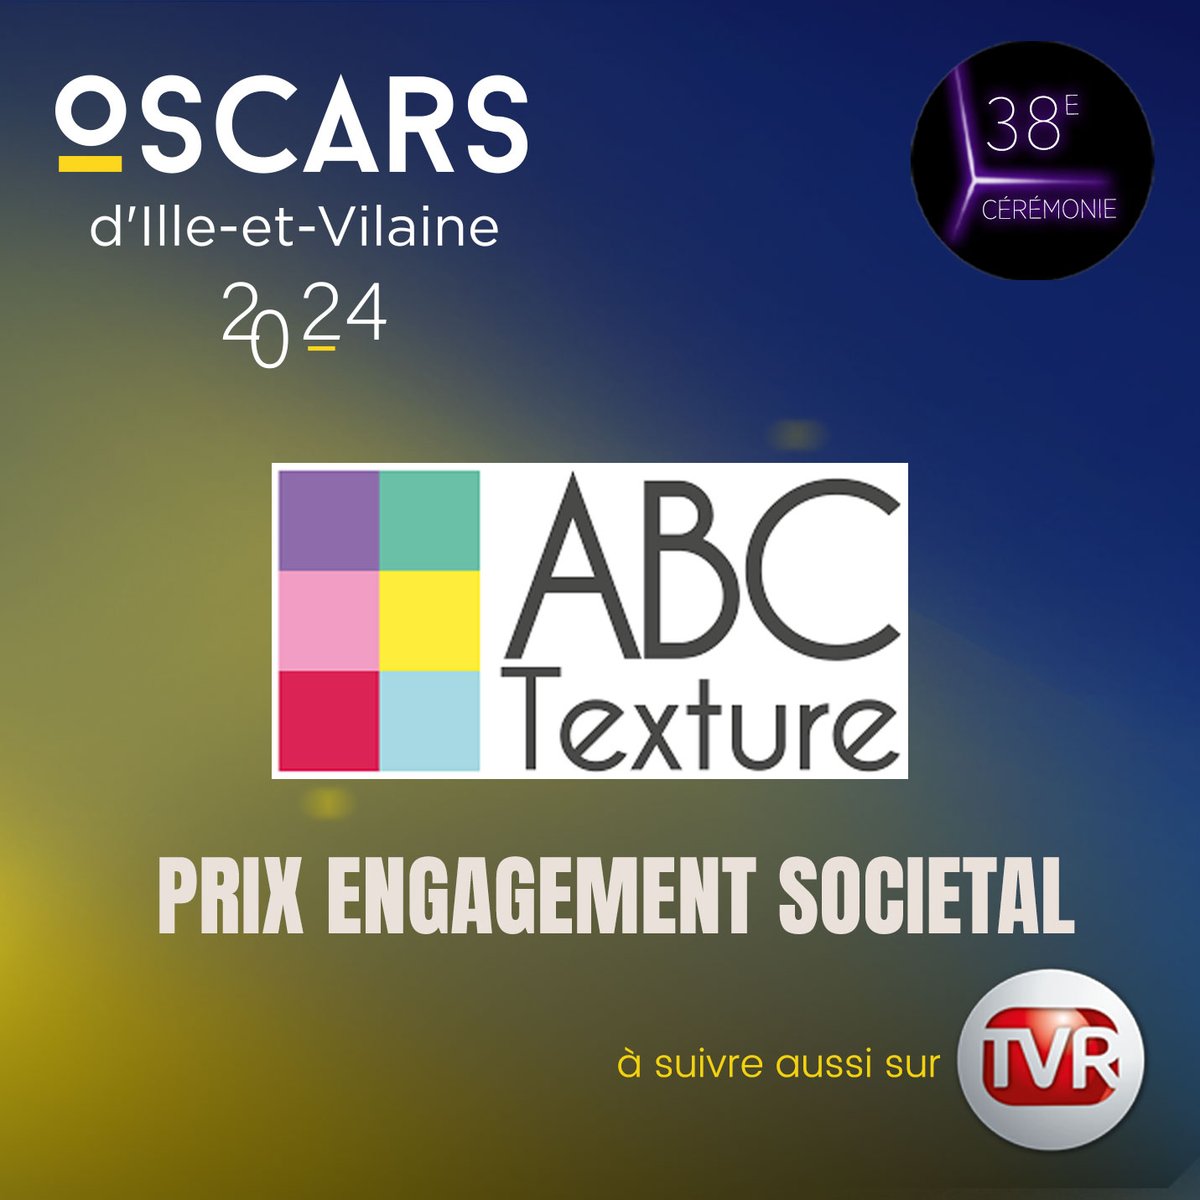 Félicitations @ABCTEXTURE, laboratoire de R&D et de fabrication de cosmétiques, pour cet Oscar Engagement sociétal! #Oscars35 @Medef35 @CAIlleEtVilaine @oecbretagne @ille_et_vilaine